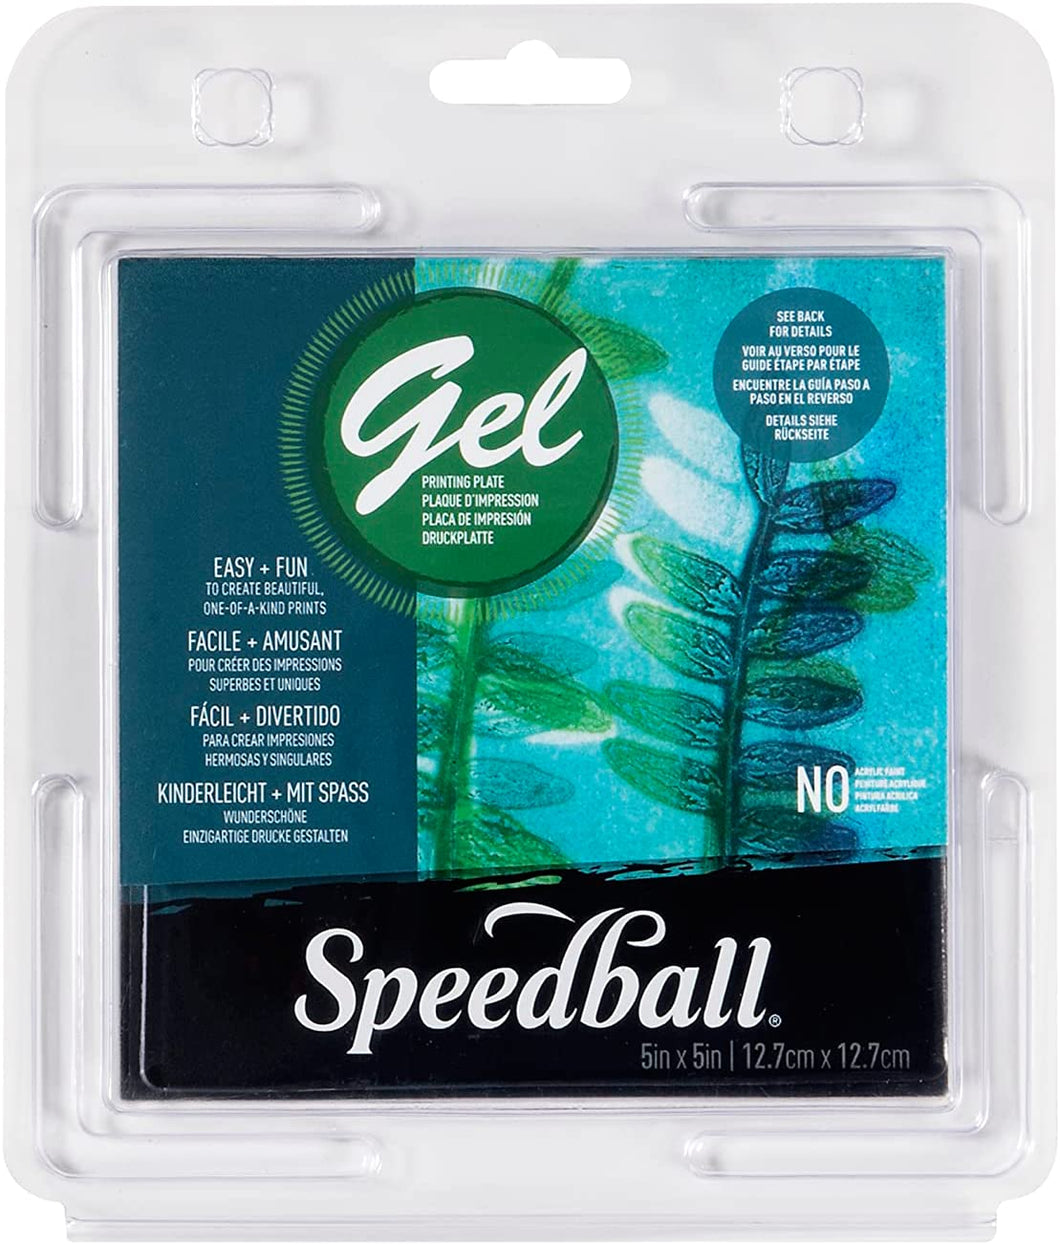 SPEEDBALL - Gel Printing Plates (Placas de Impresión de Gel)